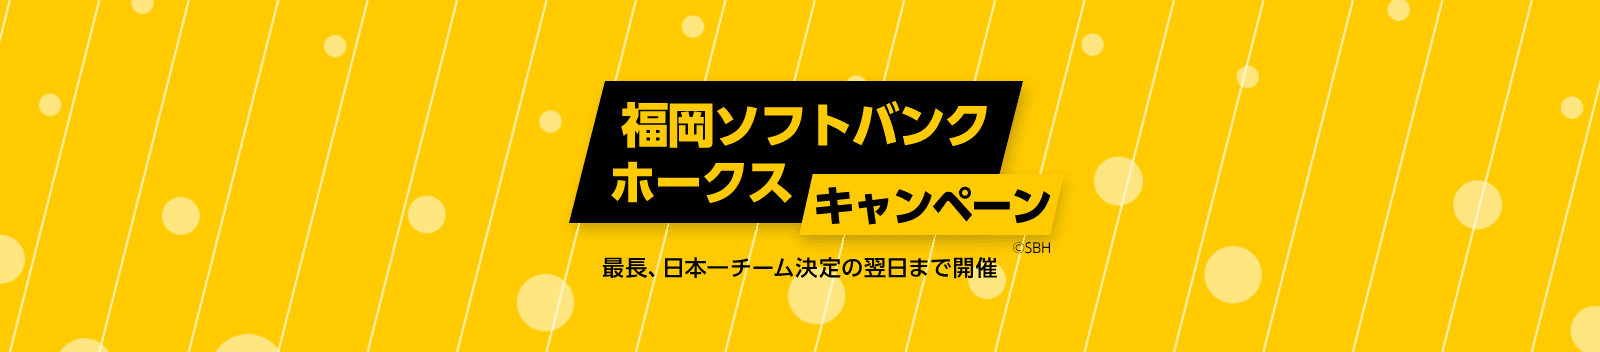 福岡ソフトバンクホークス キャンペーン 最長、日本一チーム決定の翌日まで開催